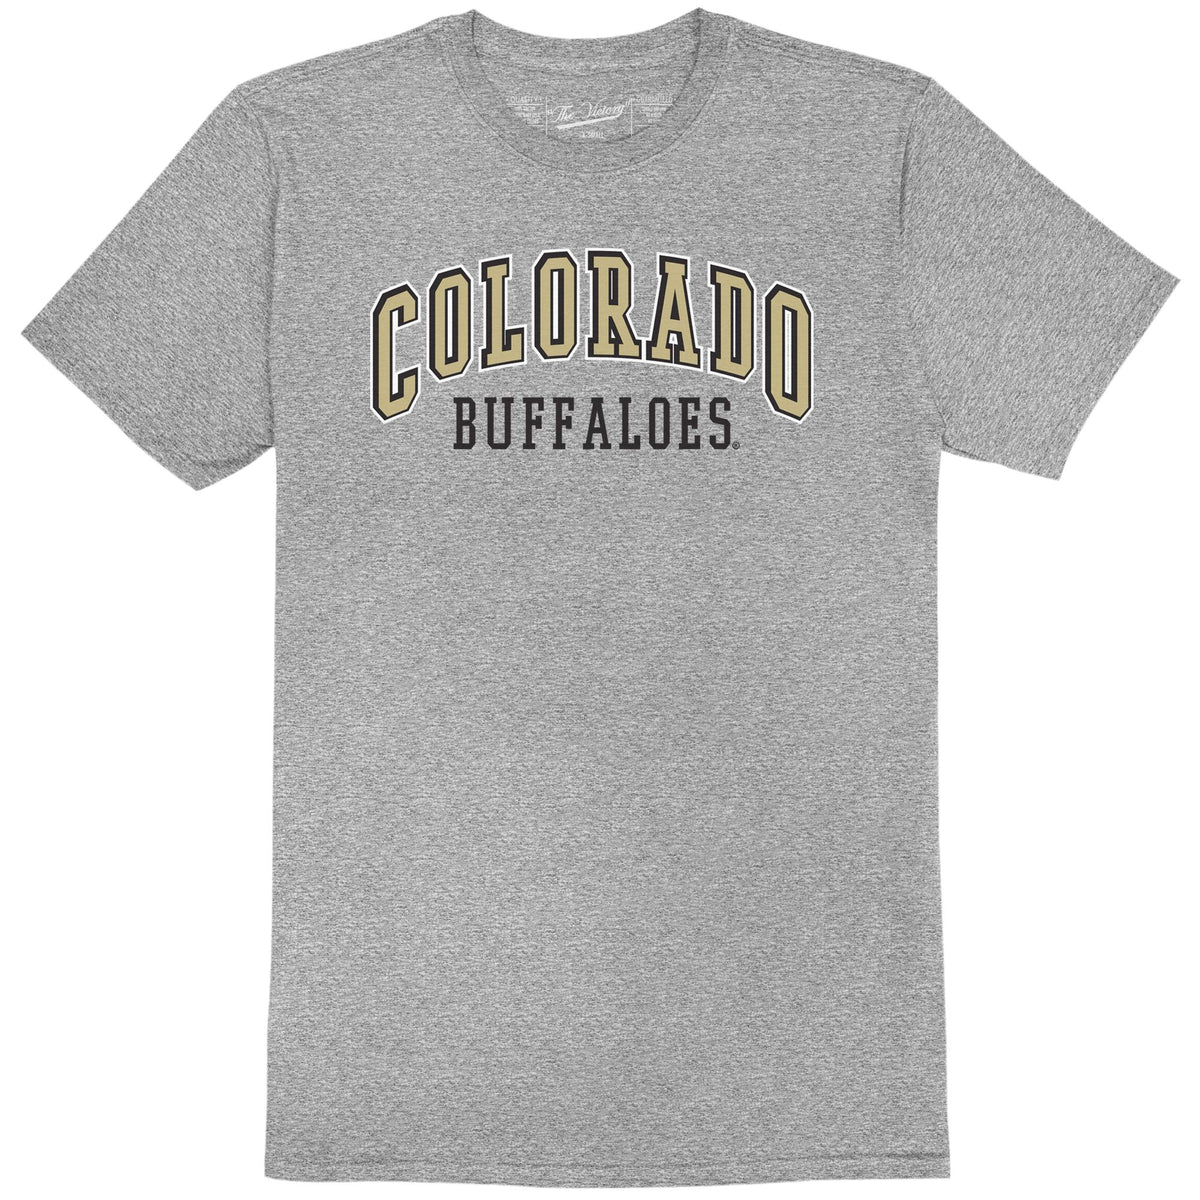 Colorado Buffaloes 100% Cotton Tee